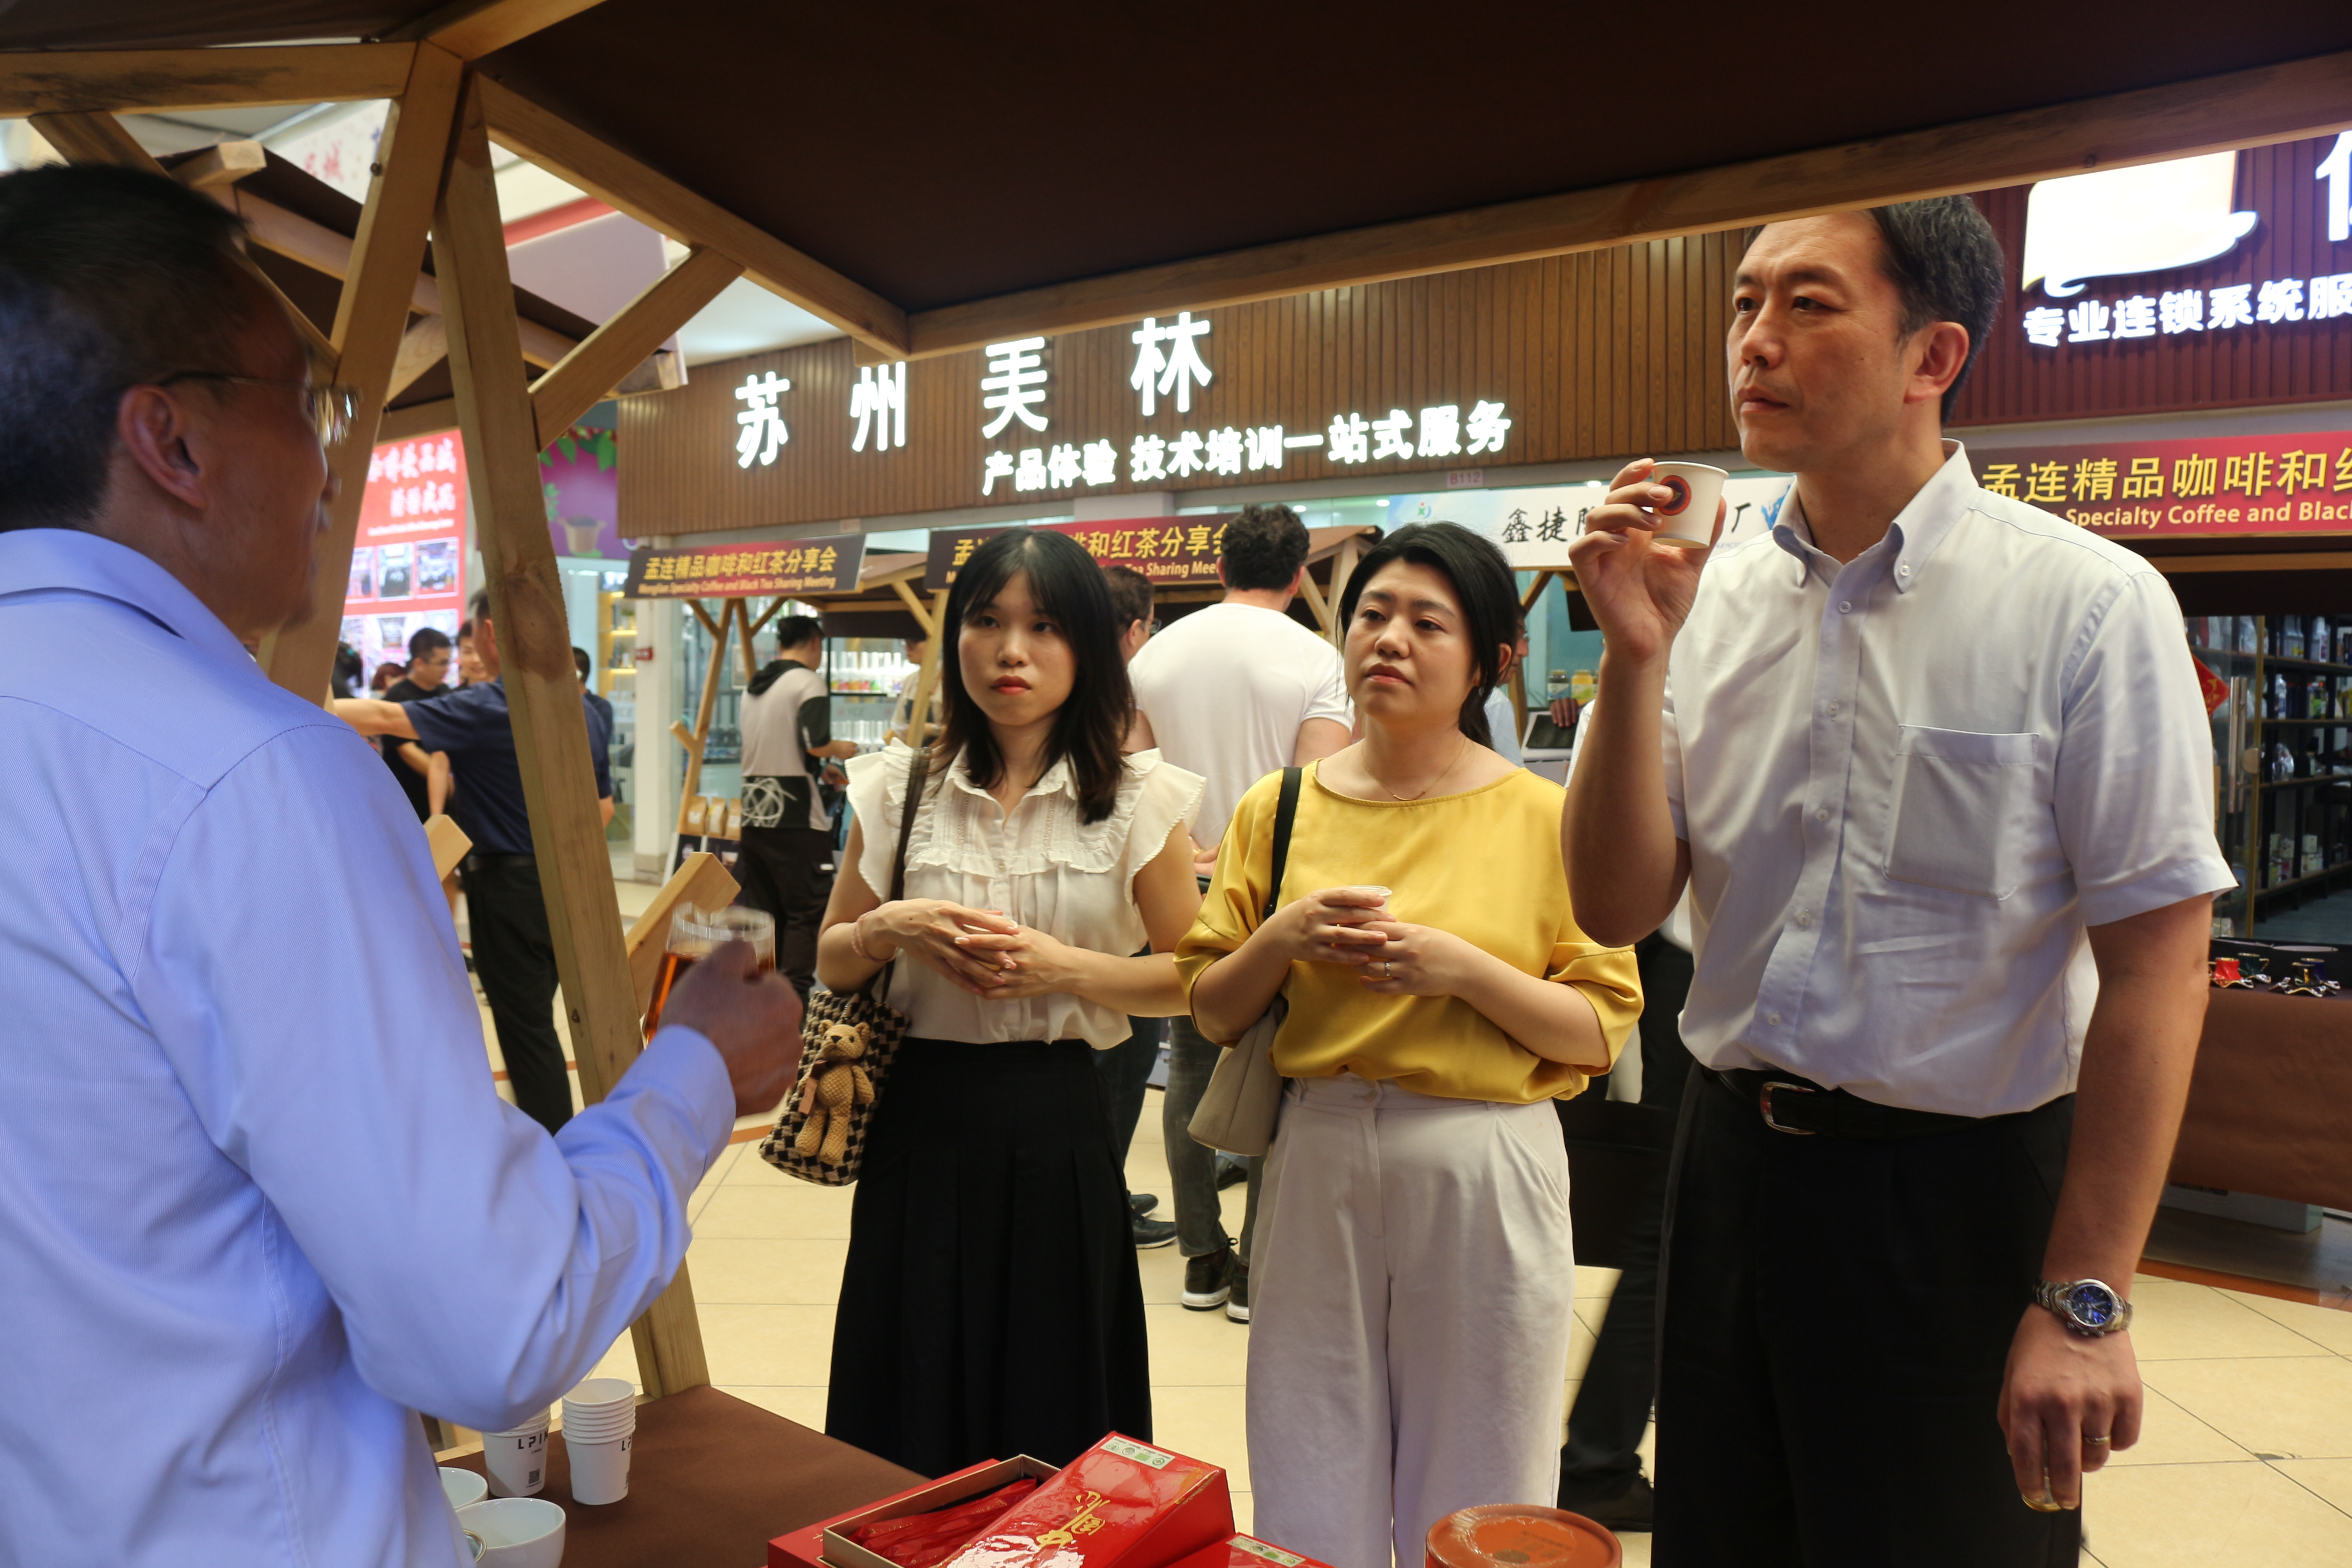 孟連精品咖啡和紅茶分享會在廣州隆重舉行